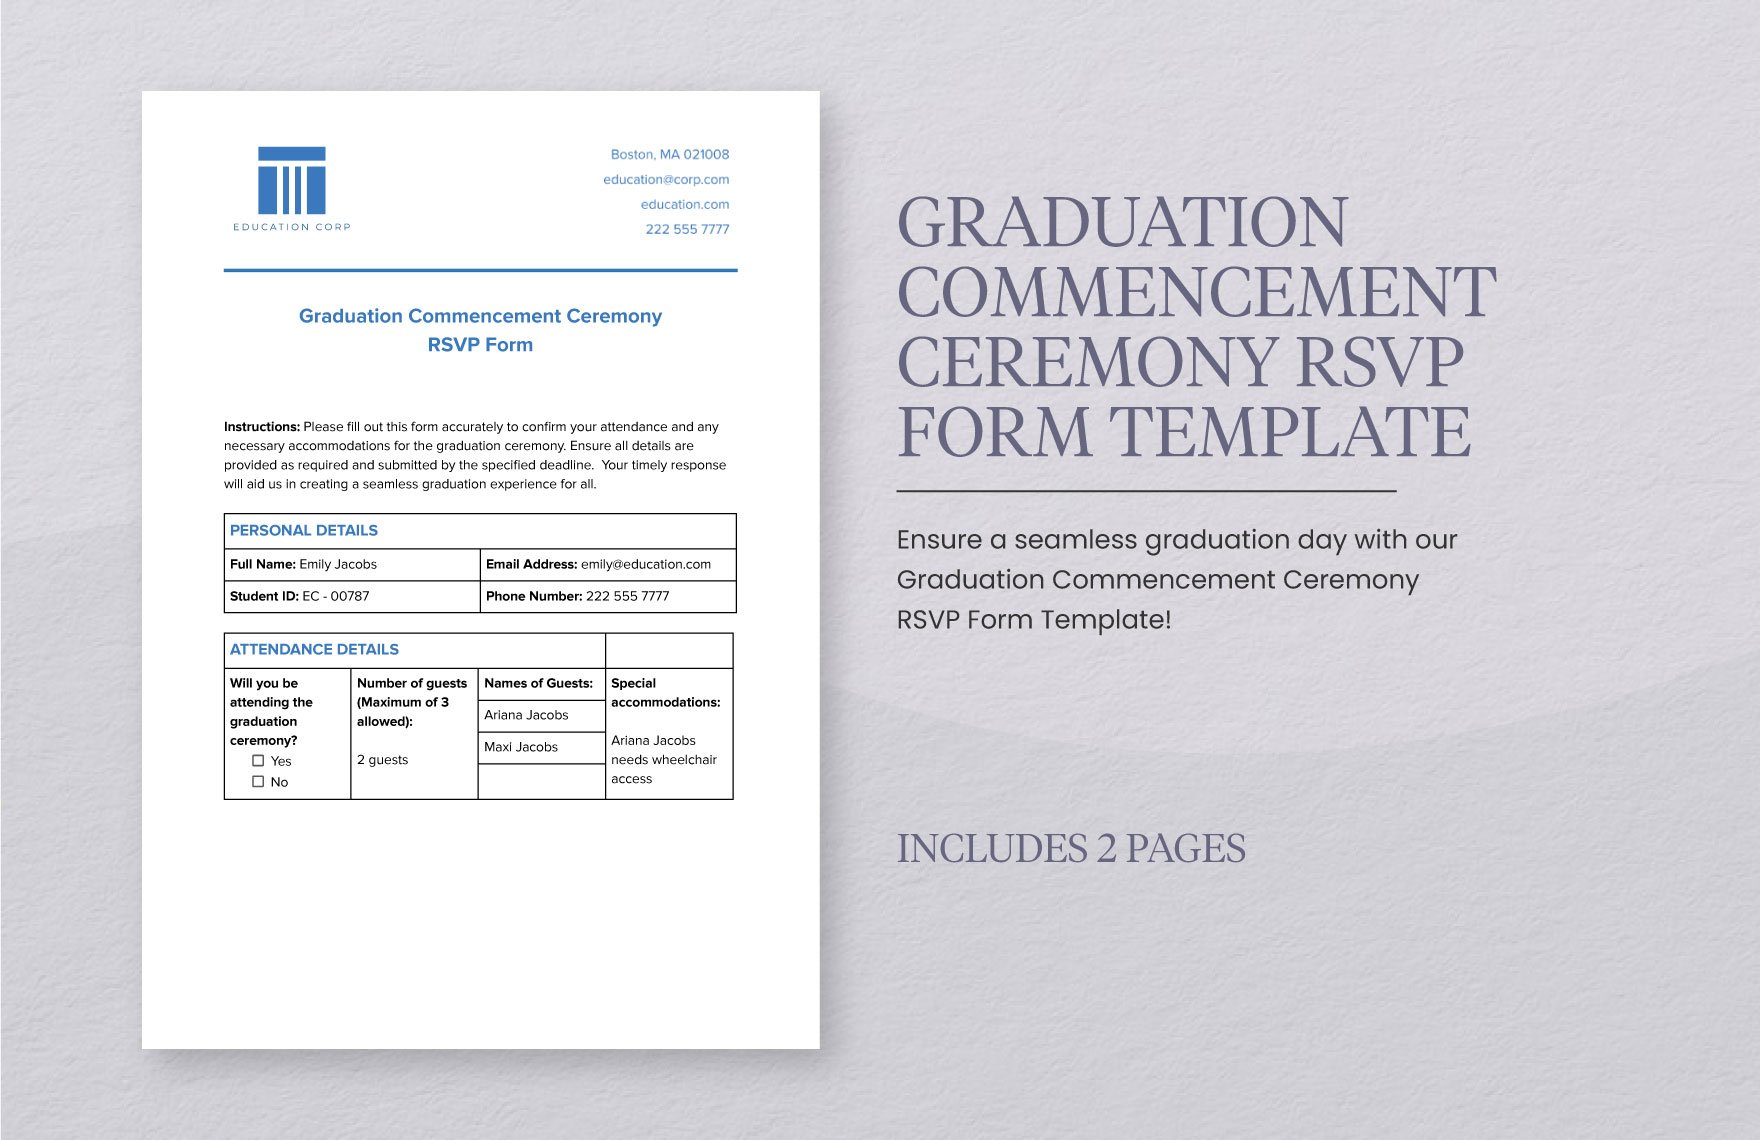 Graduation Commencement Ceremony RSVP Form Template